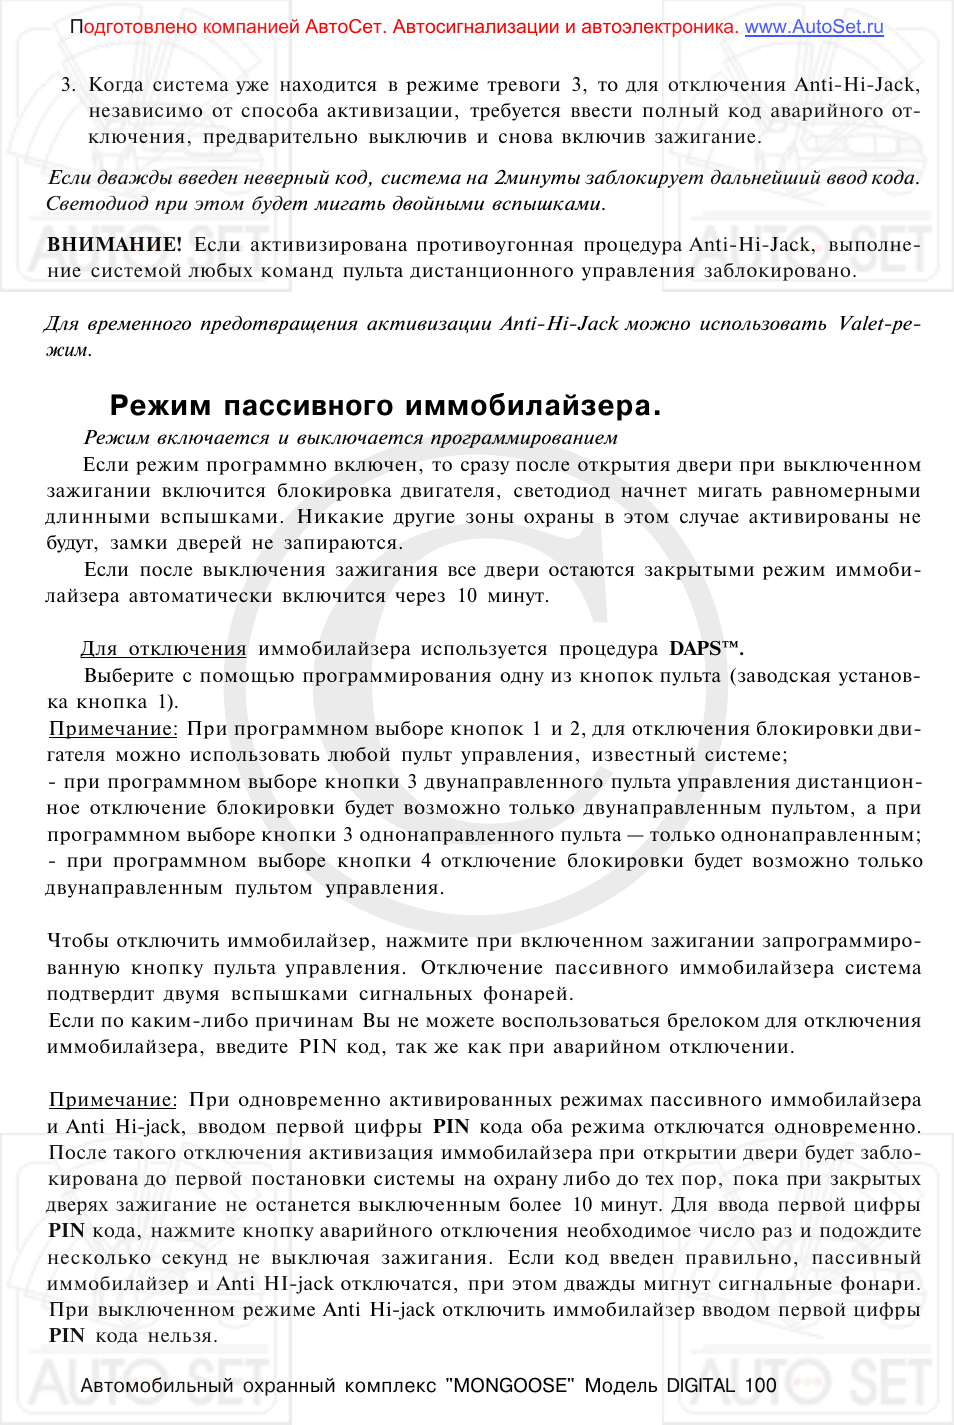 Режим пассивного иммобилайзера | Инструкция по эксплуатации Mongoose Digital 100 | Страница 12 / 25